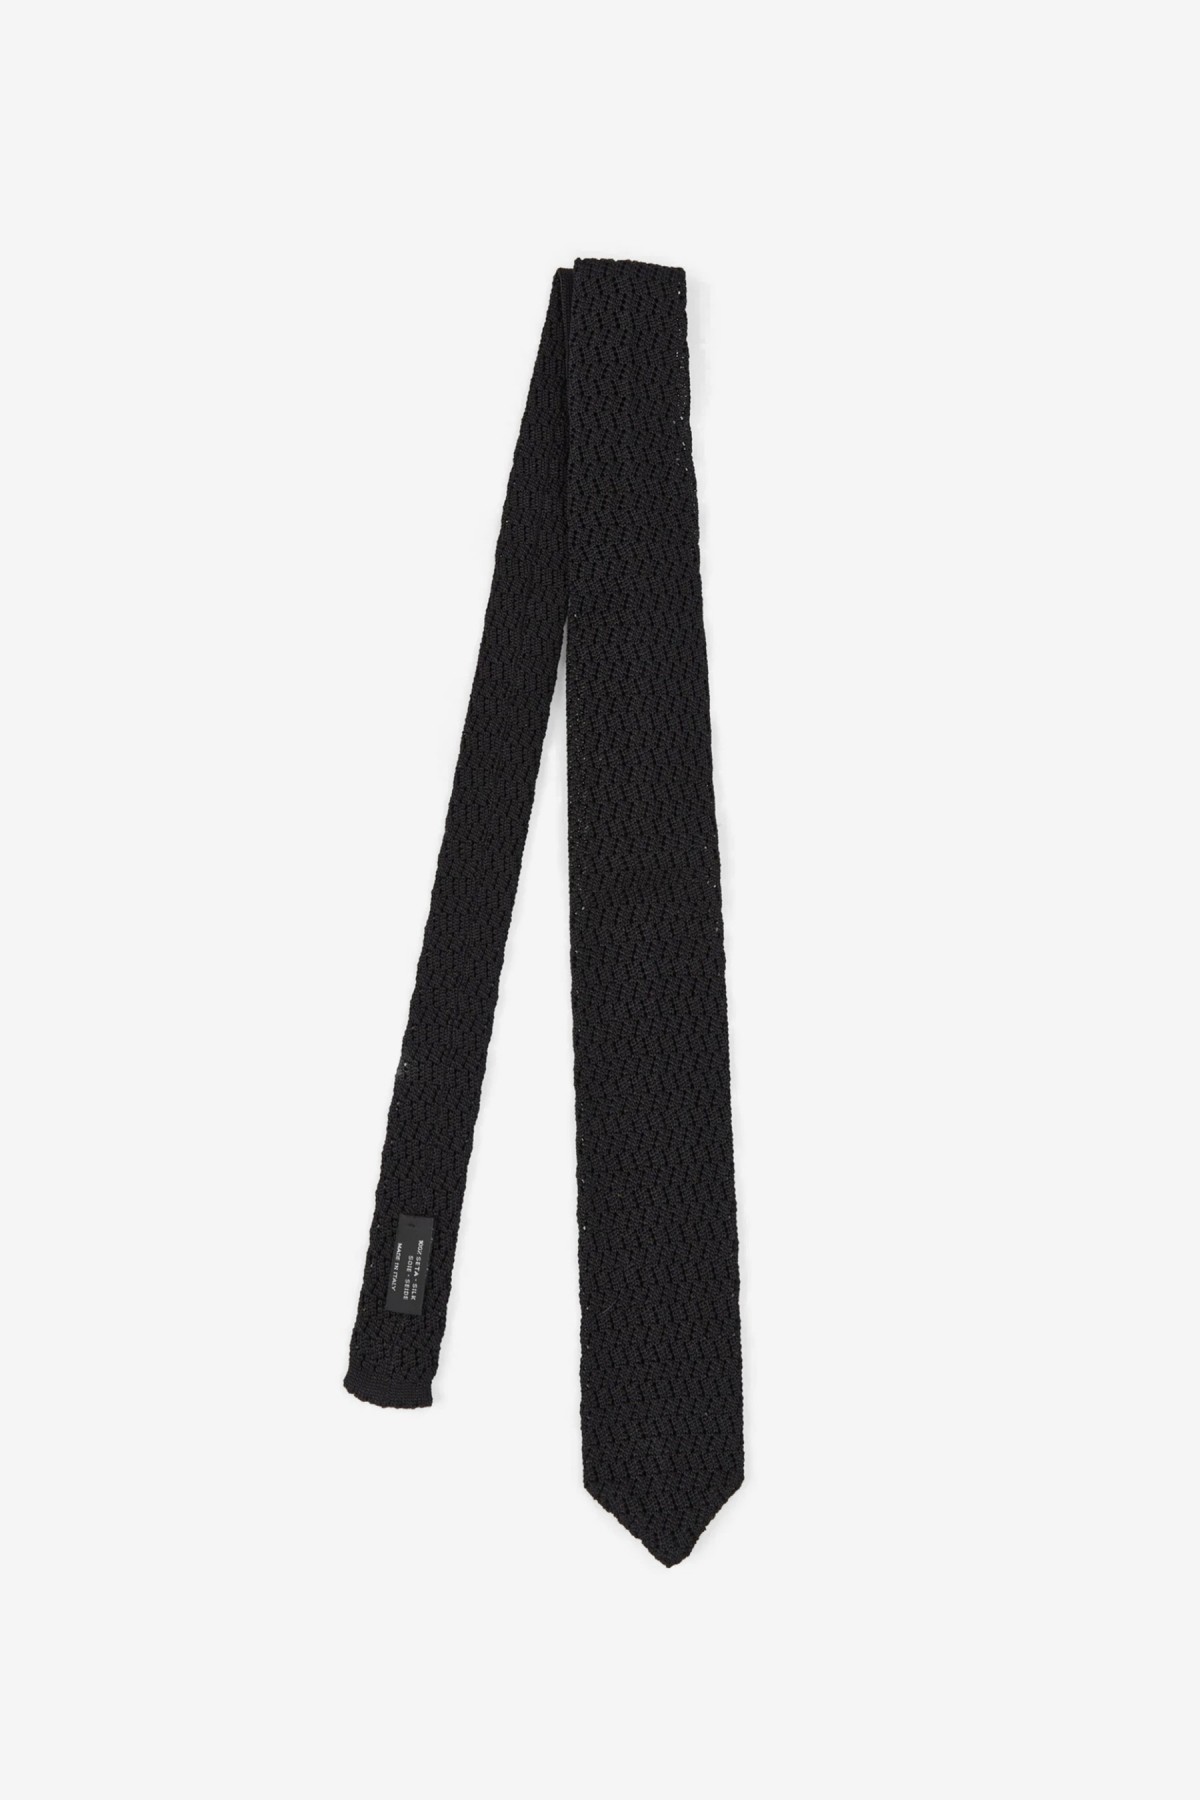 mfpen Crochet Tie in Black